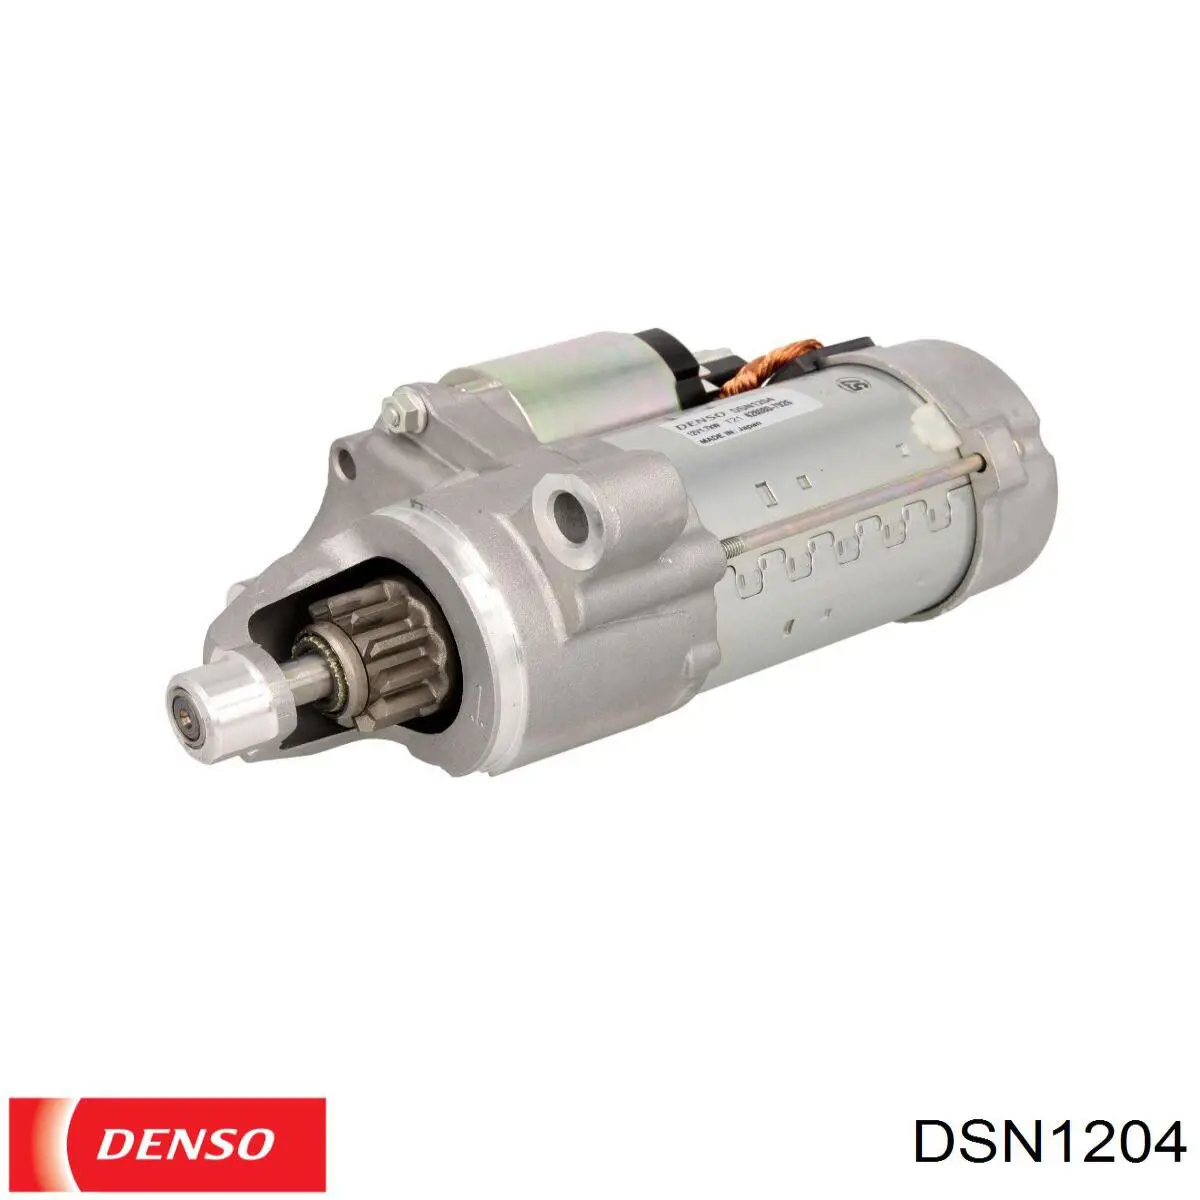 DSN1204 Denso motor de arranque